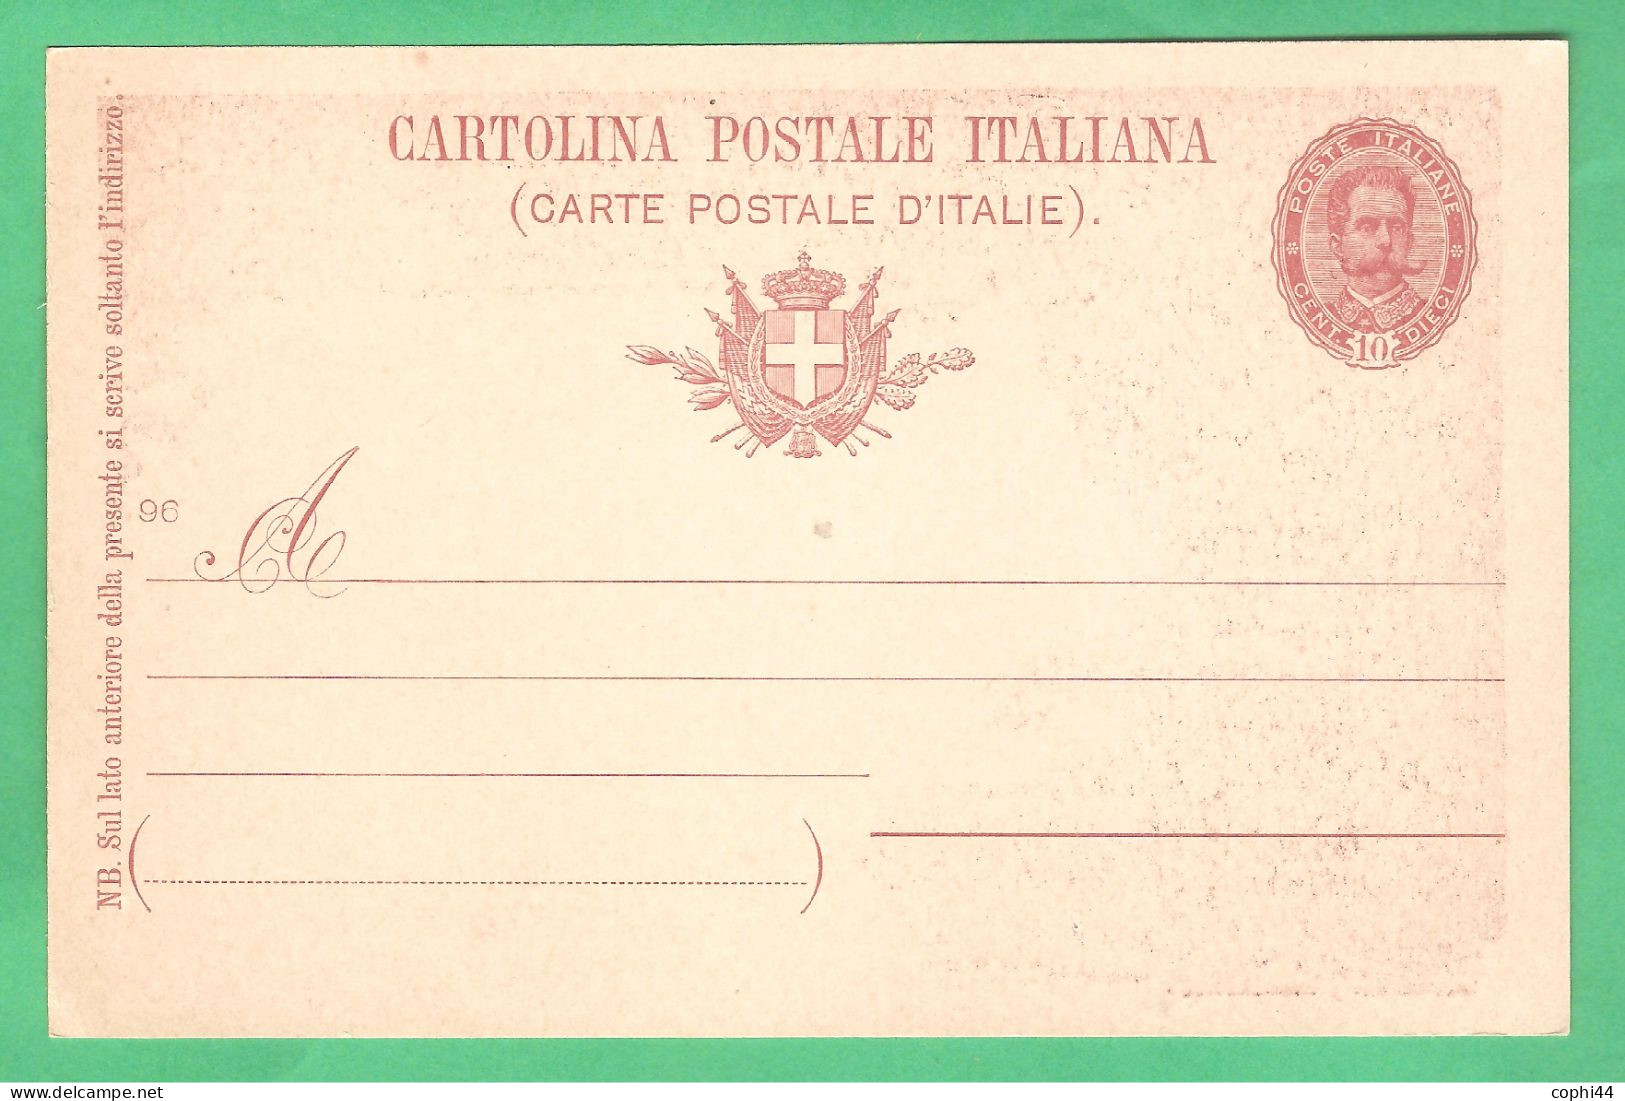 REGNO D'ITALIA 1896 CARTOLINA POSTALE NOZZE REALI MIL. 96 10 C Rosso-bruno (FILAGRANO C29-4) NUOVA - Stamped Stationery